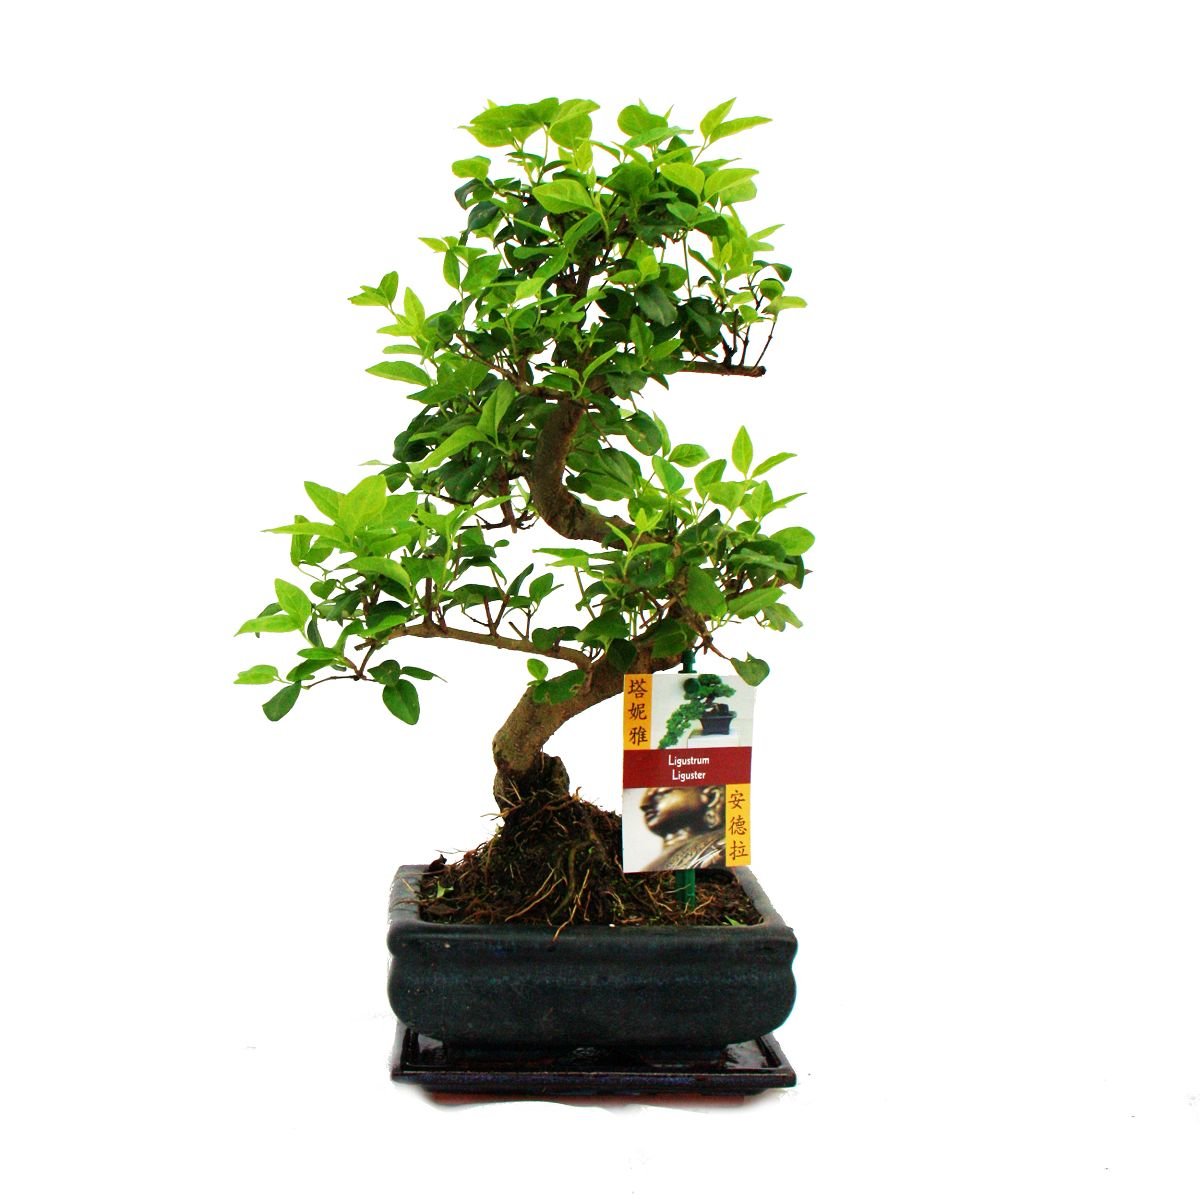 Bonsai 5 ani Ligustrum, bonsai cadou, planta bonsai